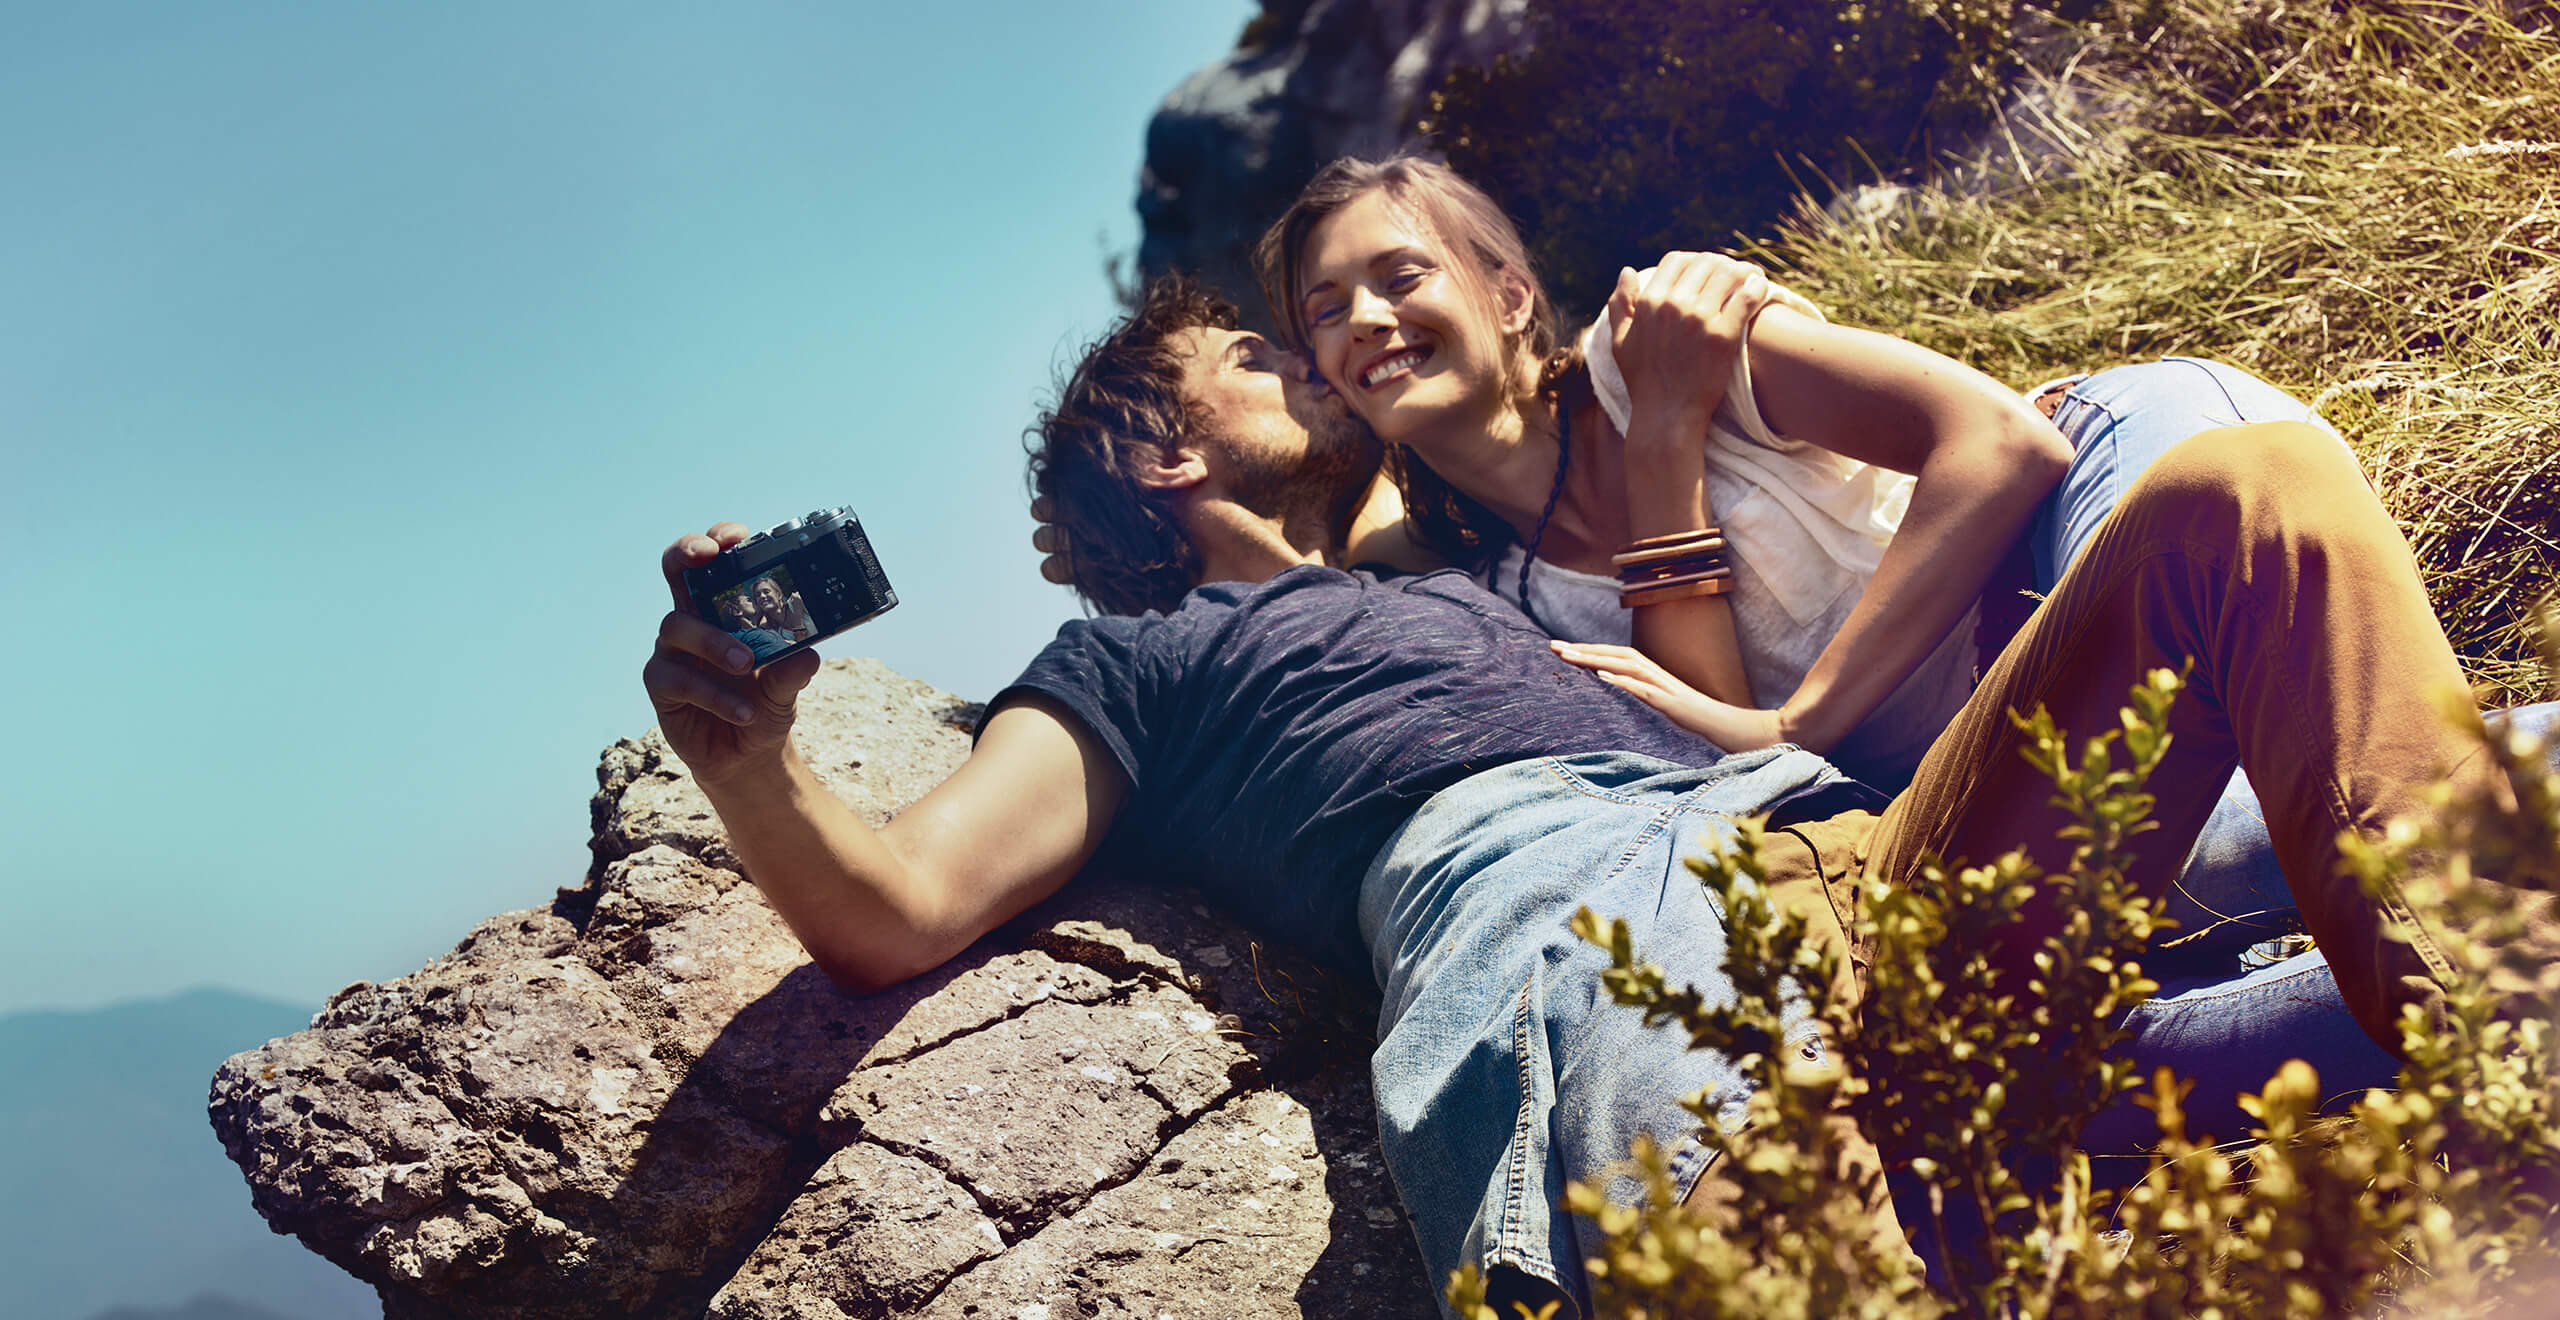 SEAT services voitures neuves extension de garantie entretien - Un couple allongé en montagne prenant un selfie